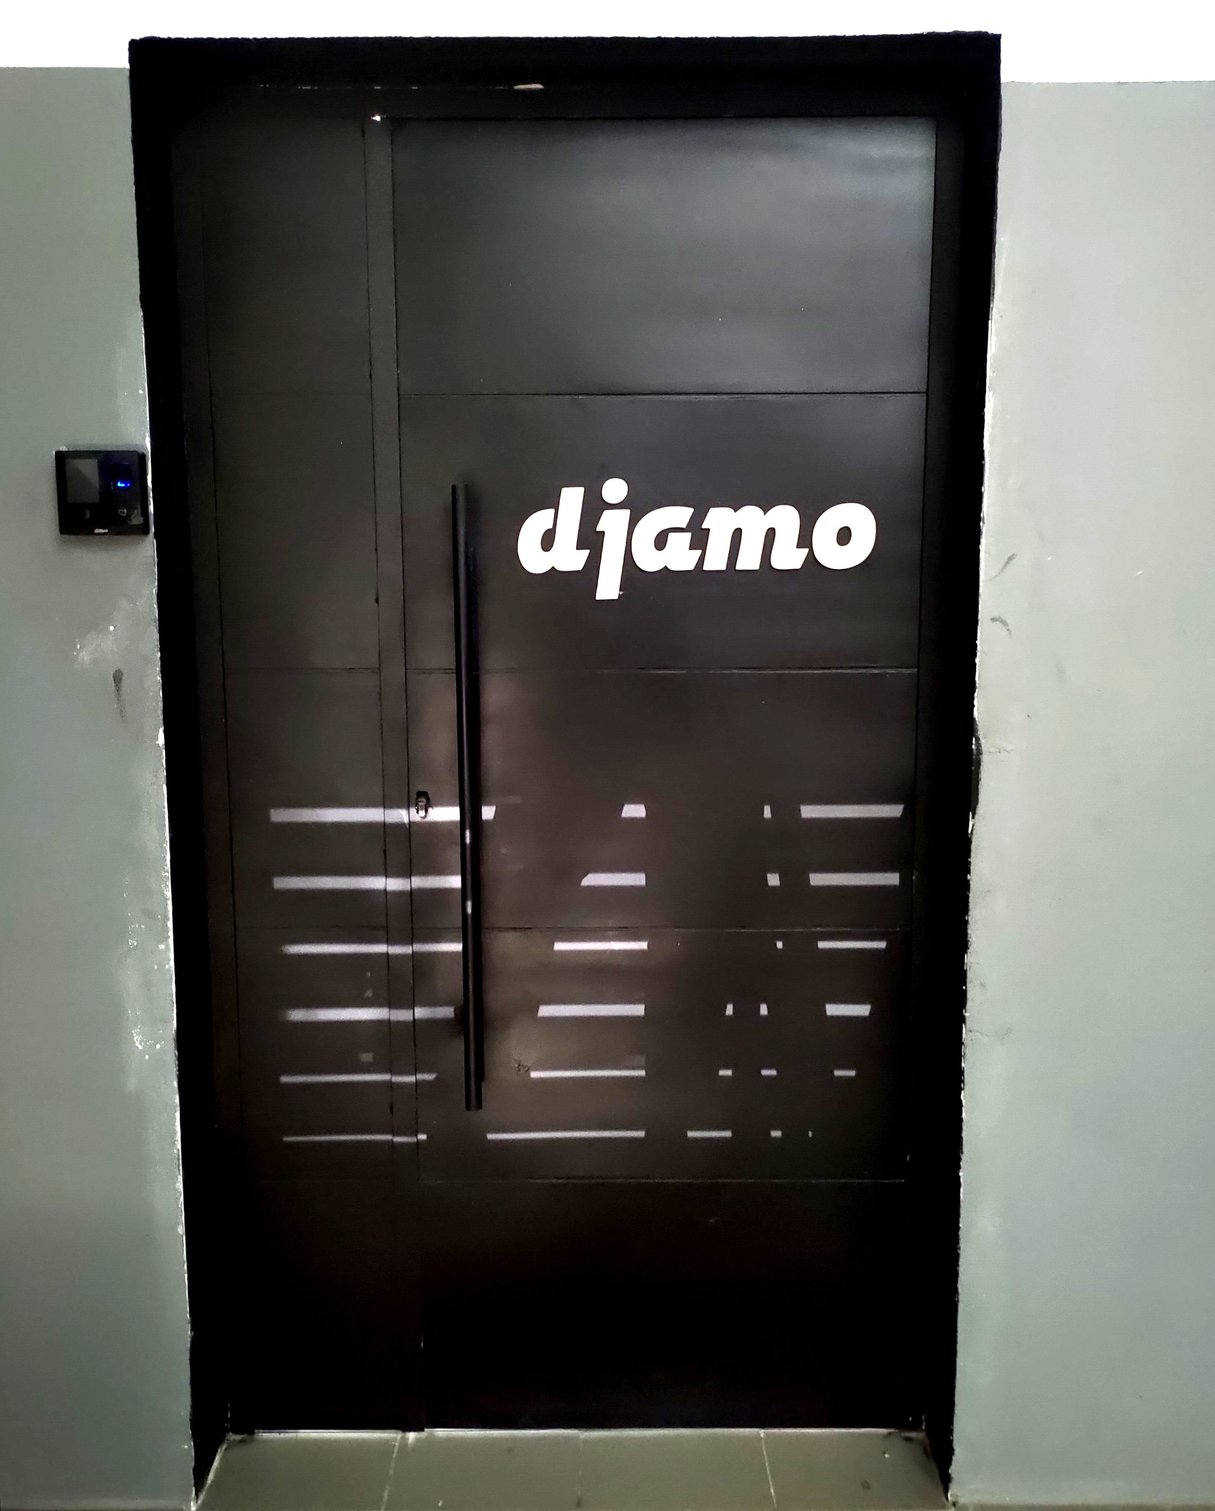 Derrière cette lourde porte, se trouvent les locaux de Djamo, l’une des start-up les plus en vue d’Abidjan.